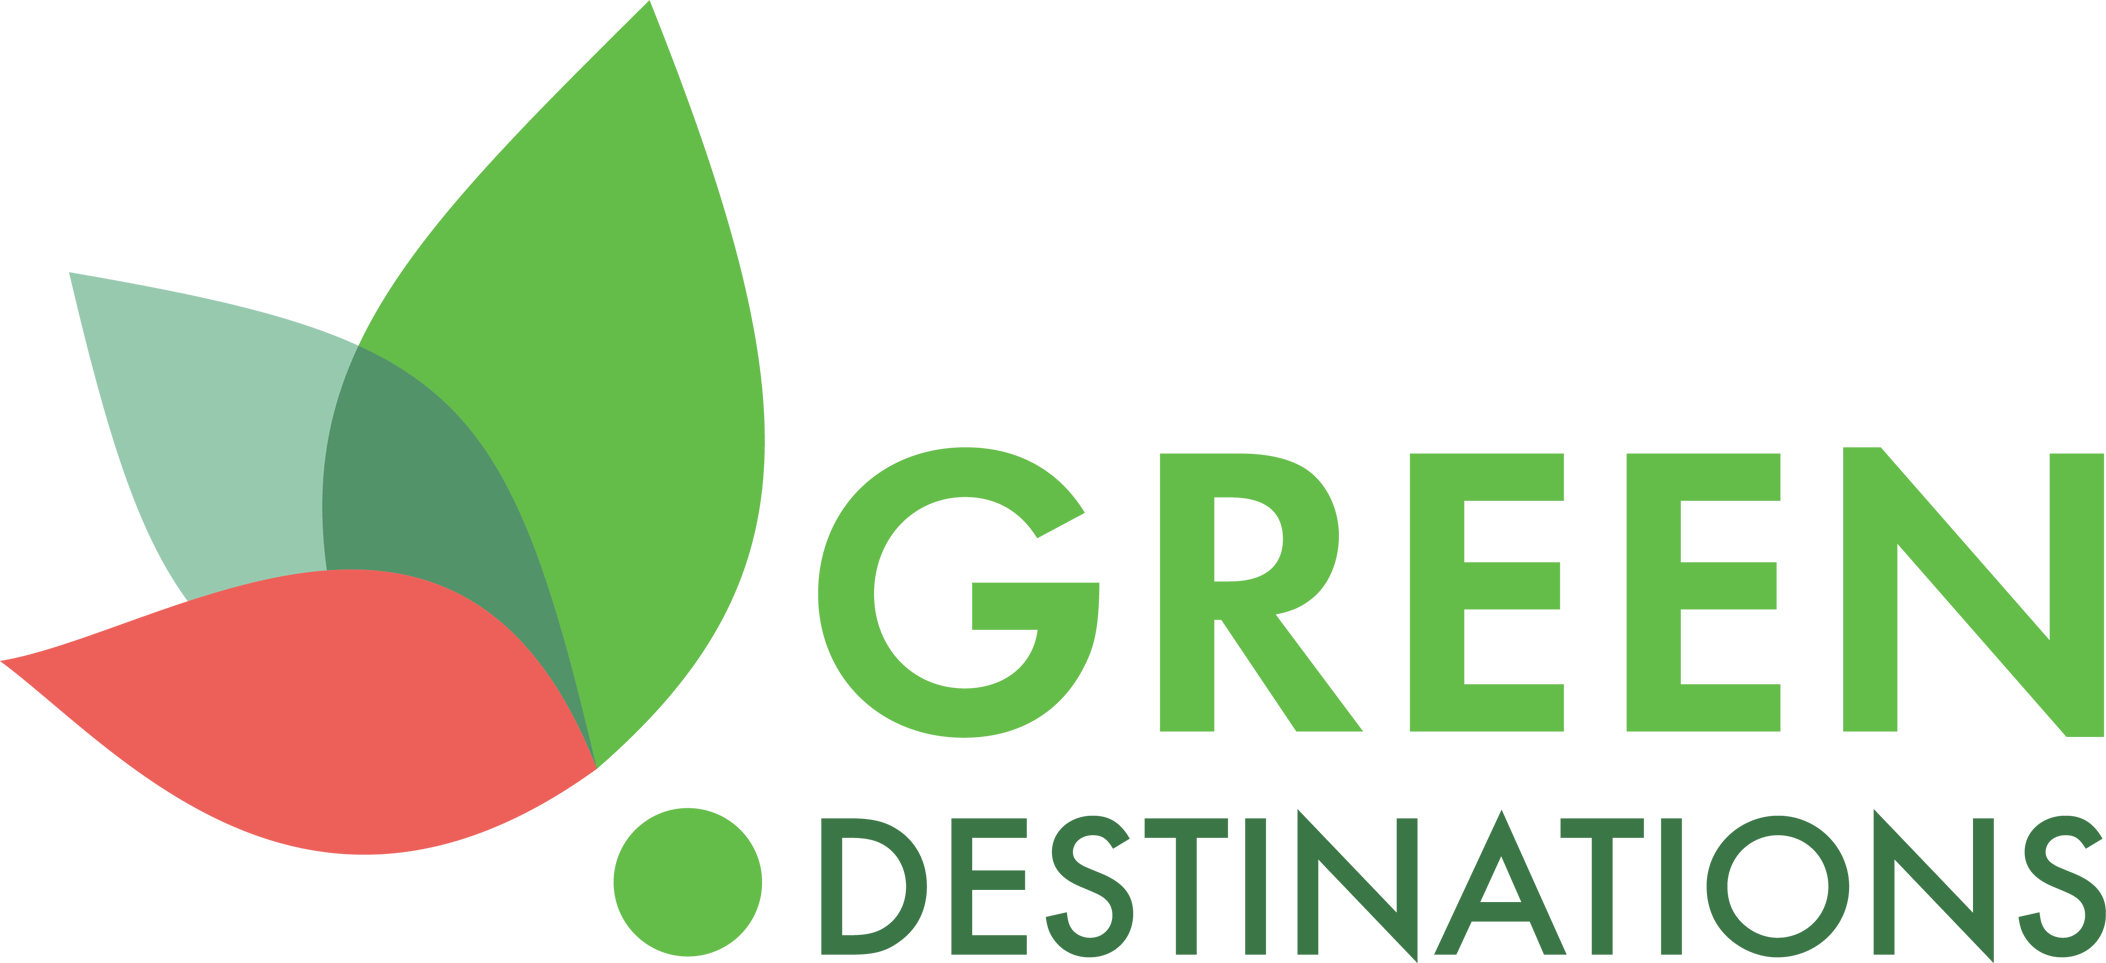 Green Destinations Logo